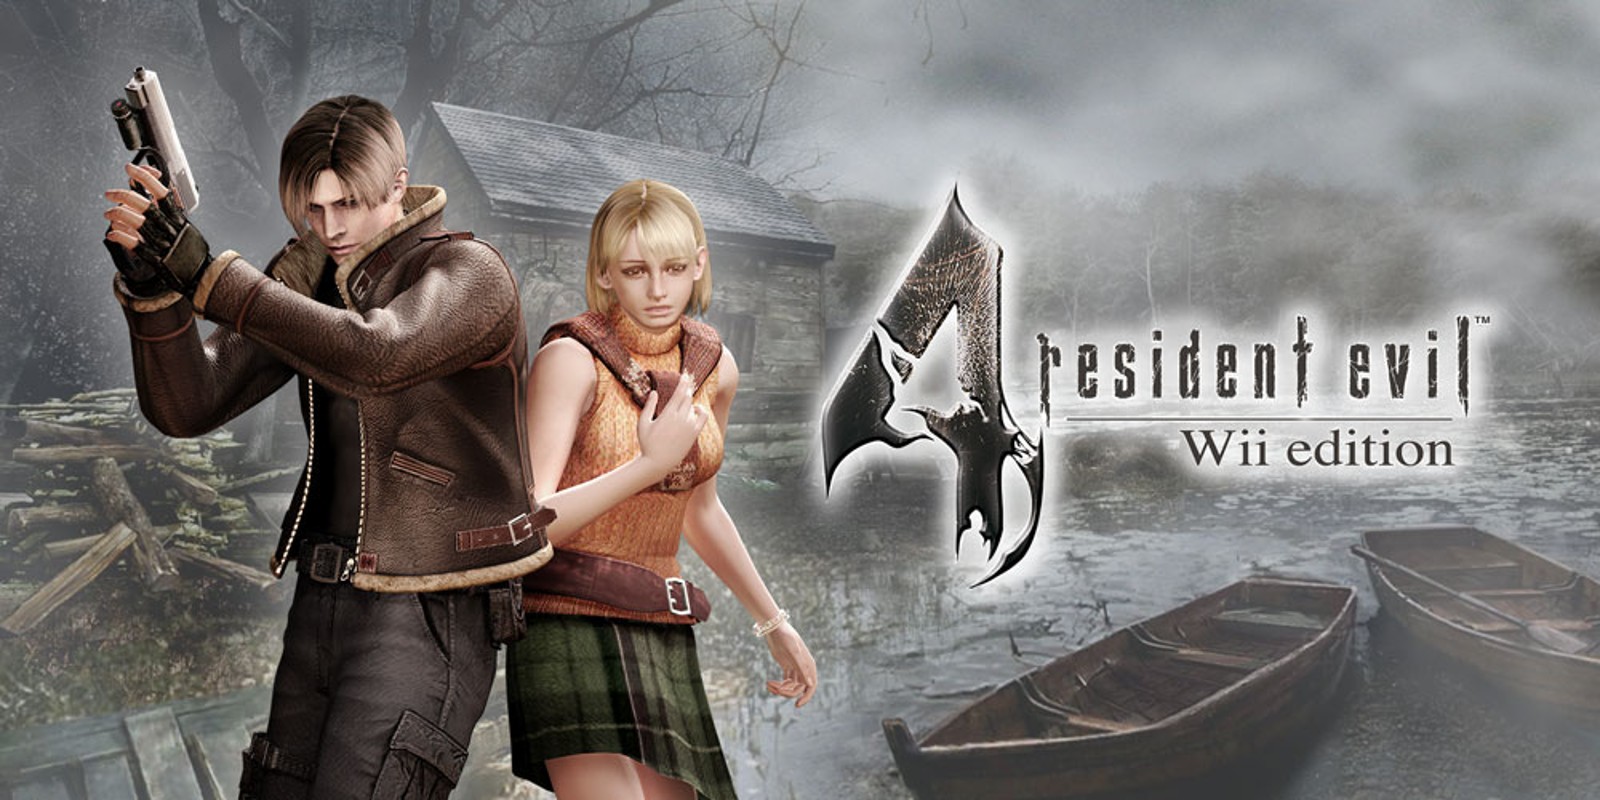 Прохождение игры Resident Evil 4 - Ultimate HD Edition # 23 (Русская версия игры) PC - Ver. HD Full.